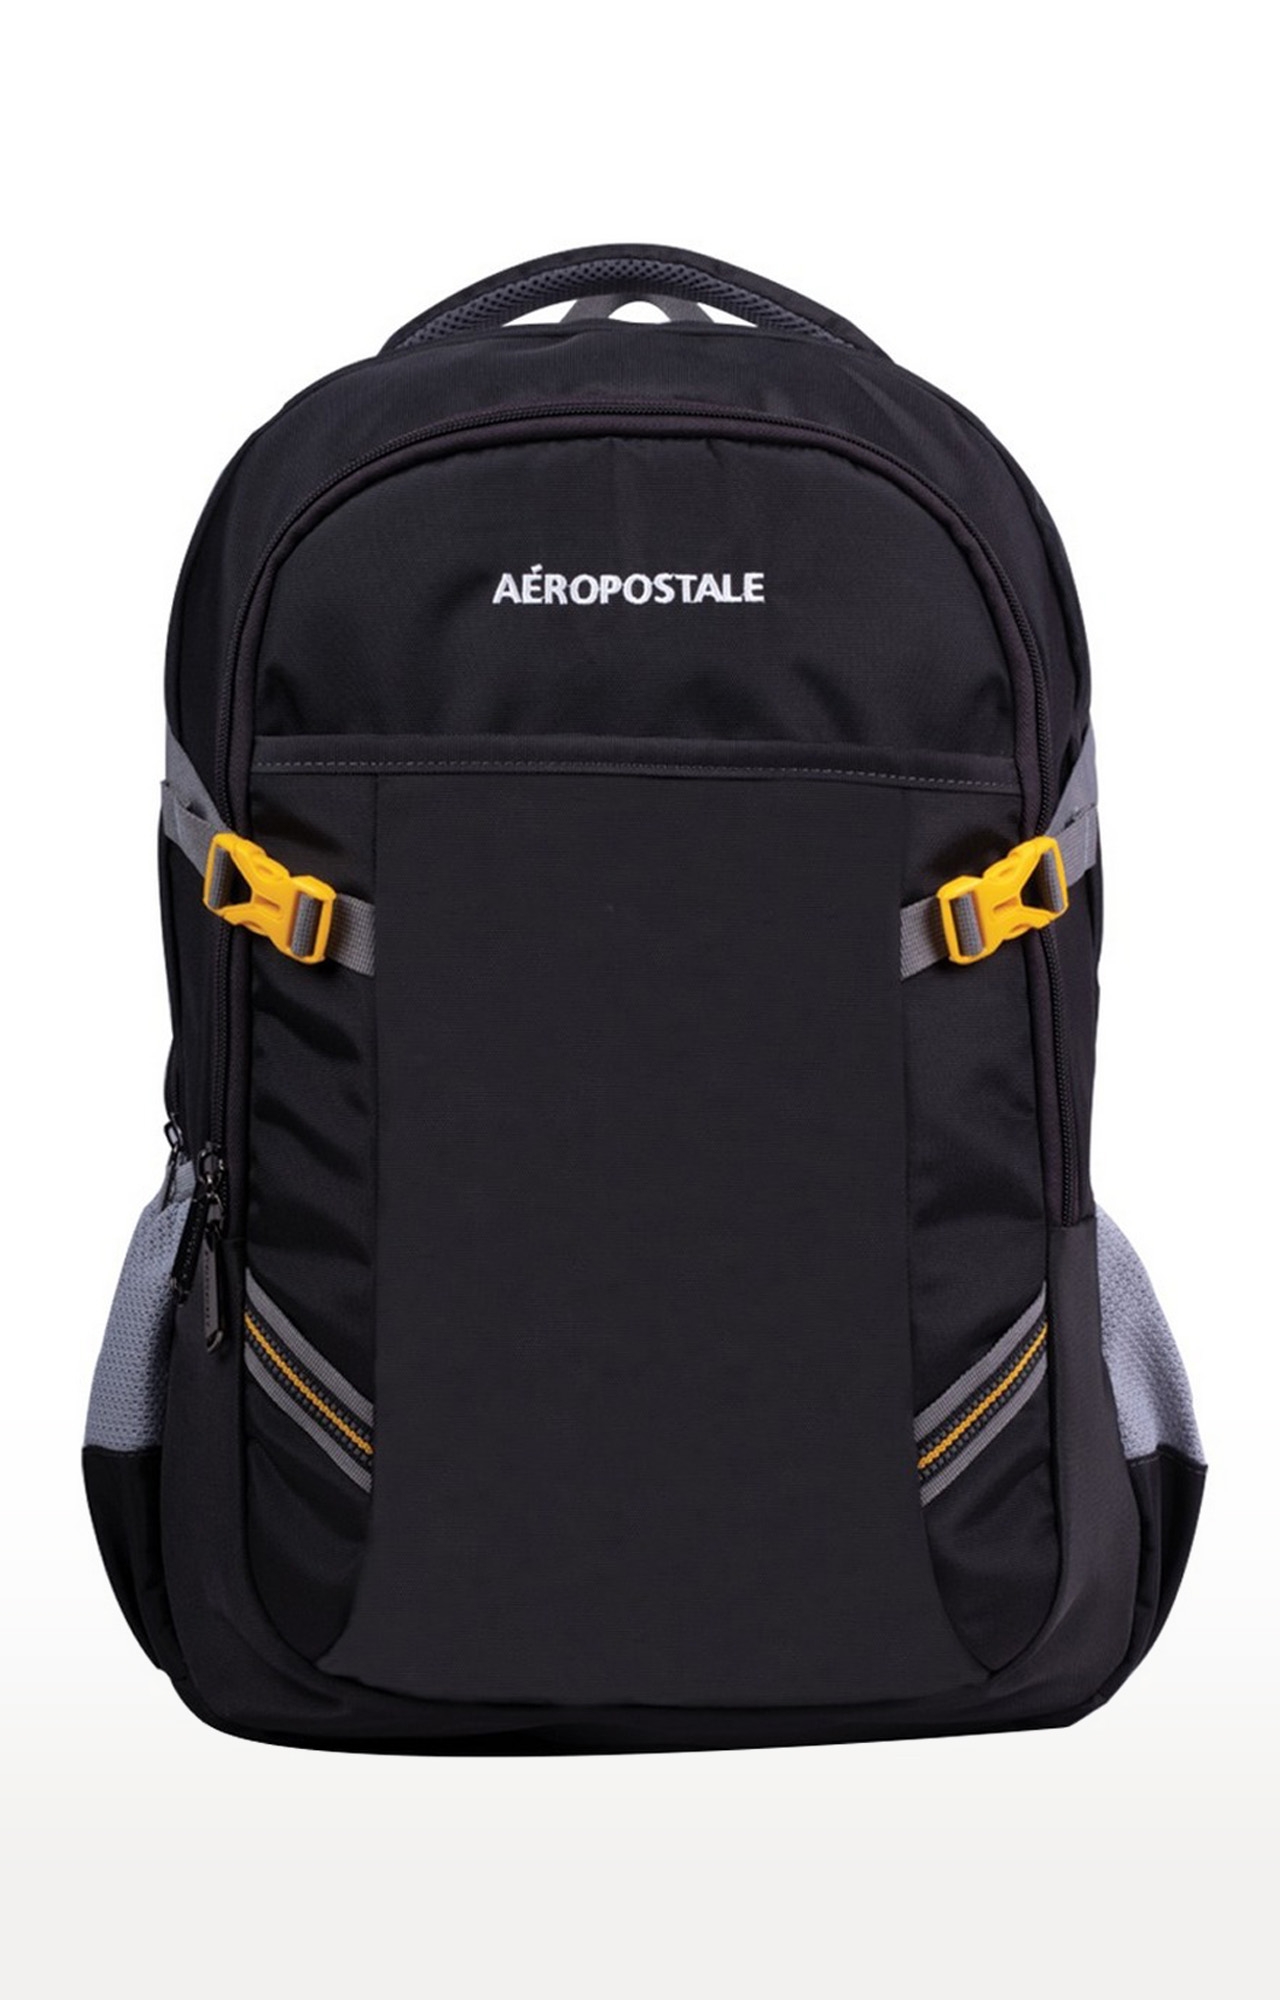 Aeropostale Backpack Extra Pocket Soft Adjustable Straps Bag